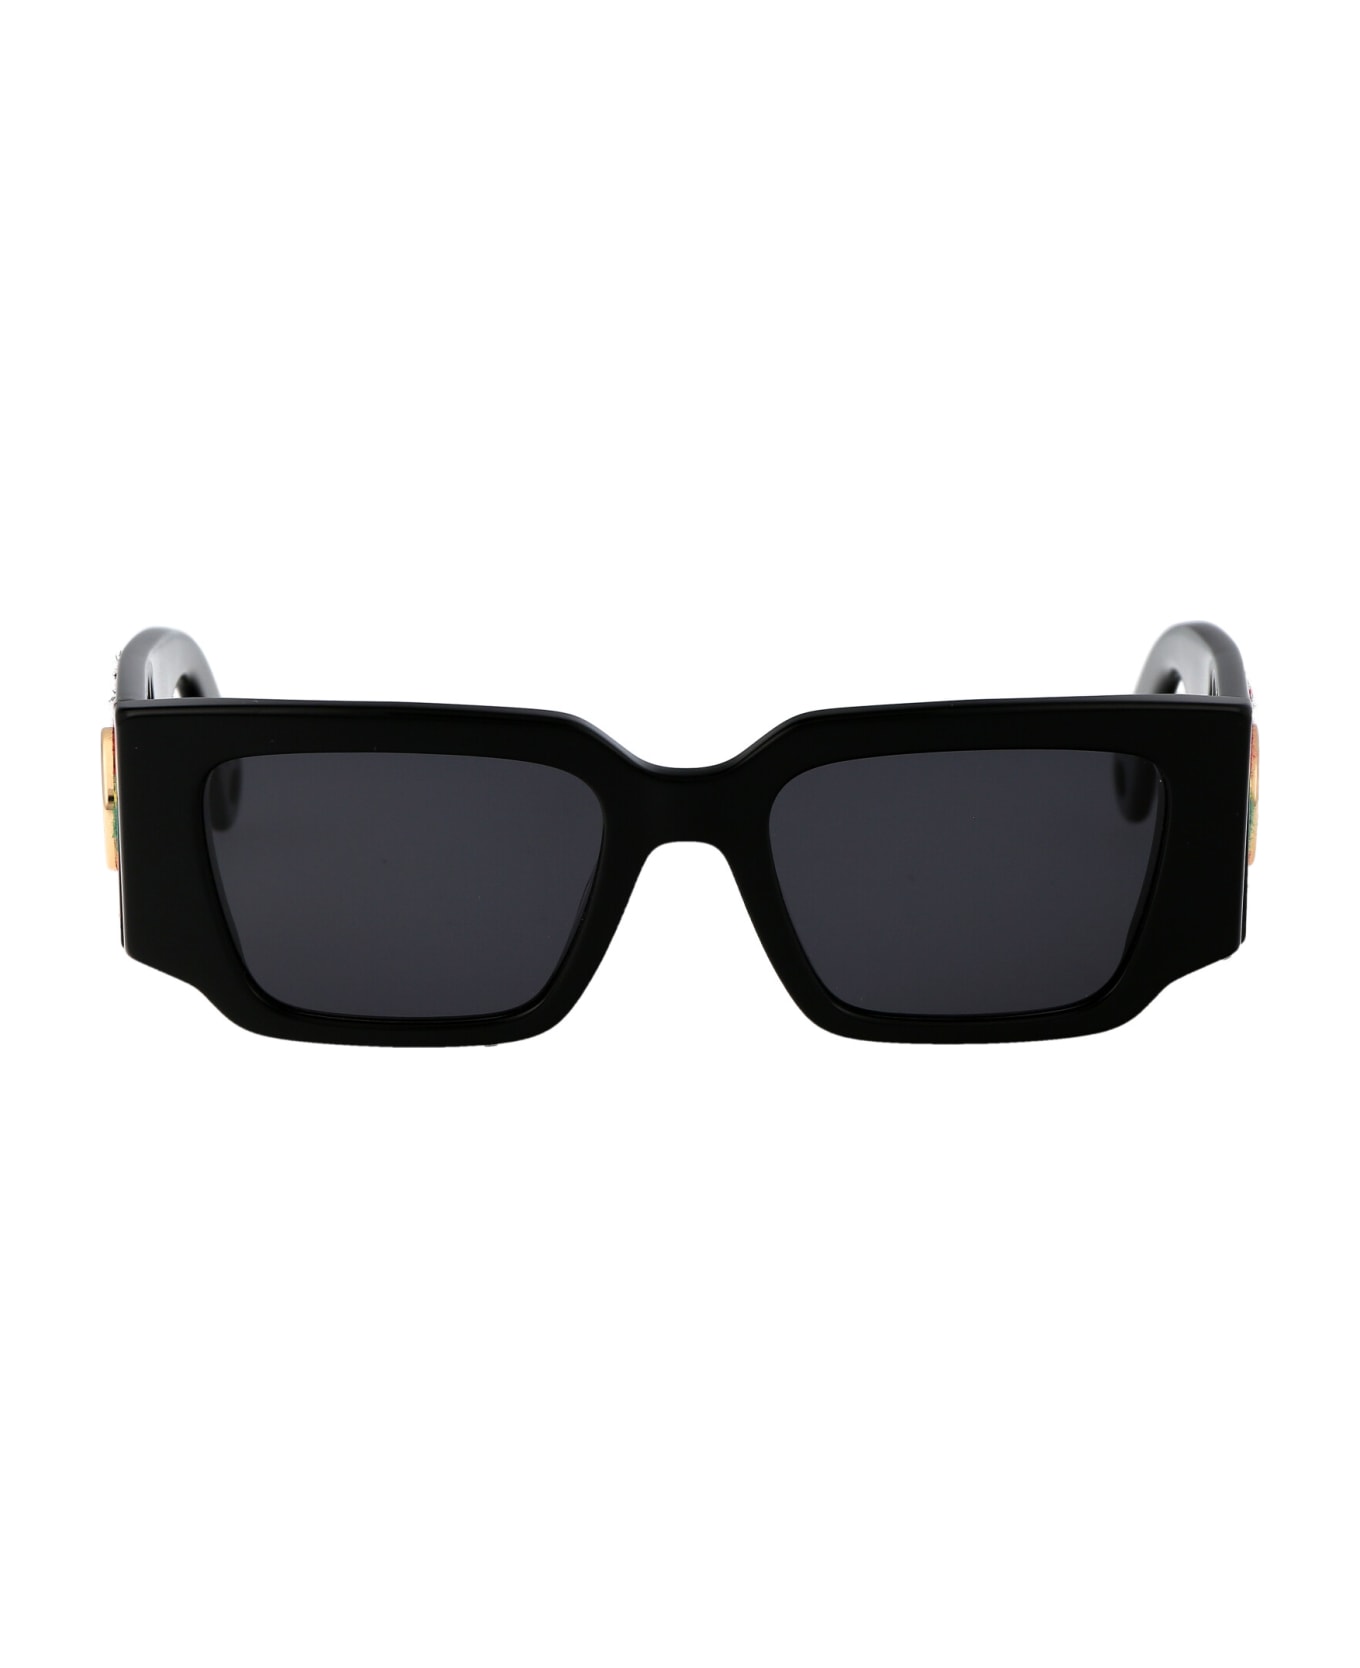 Lanvin Lnv639s Sunglasses - 001 BLACK